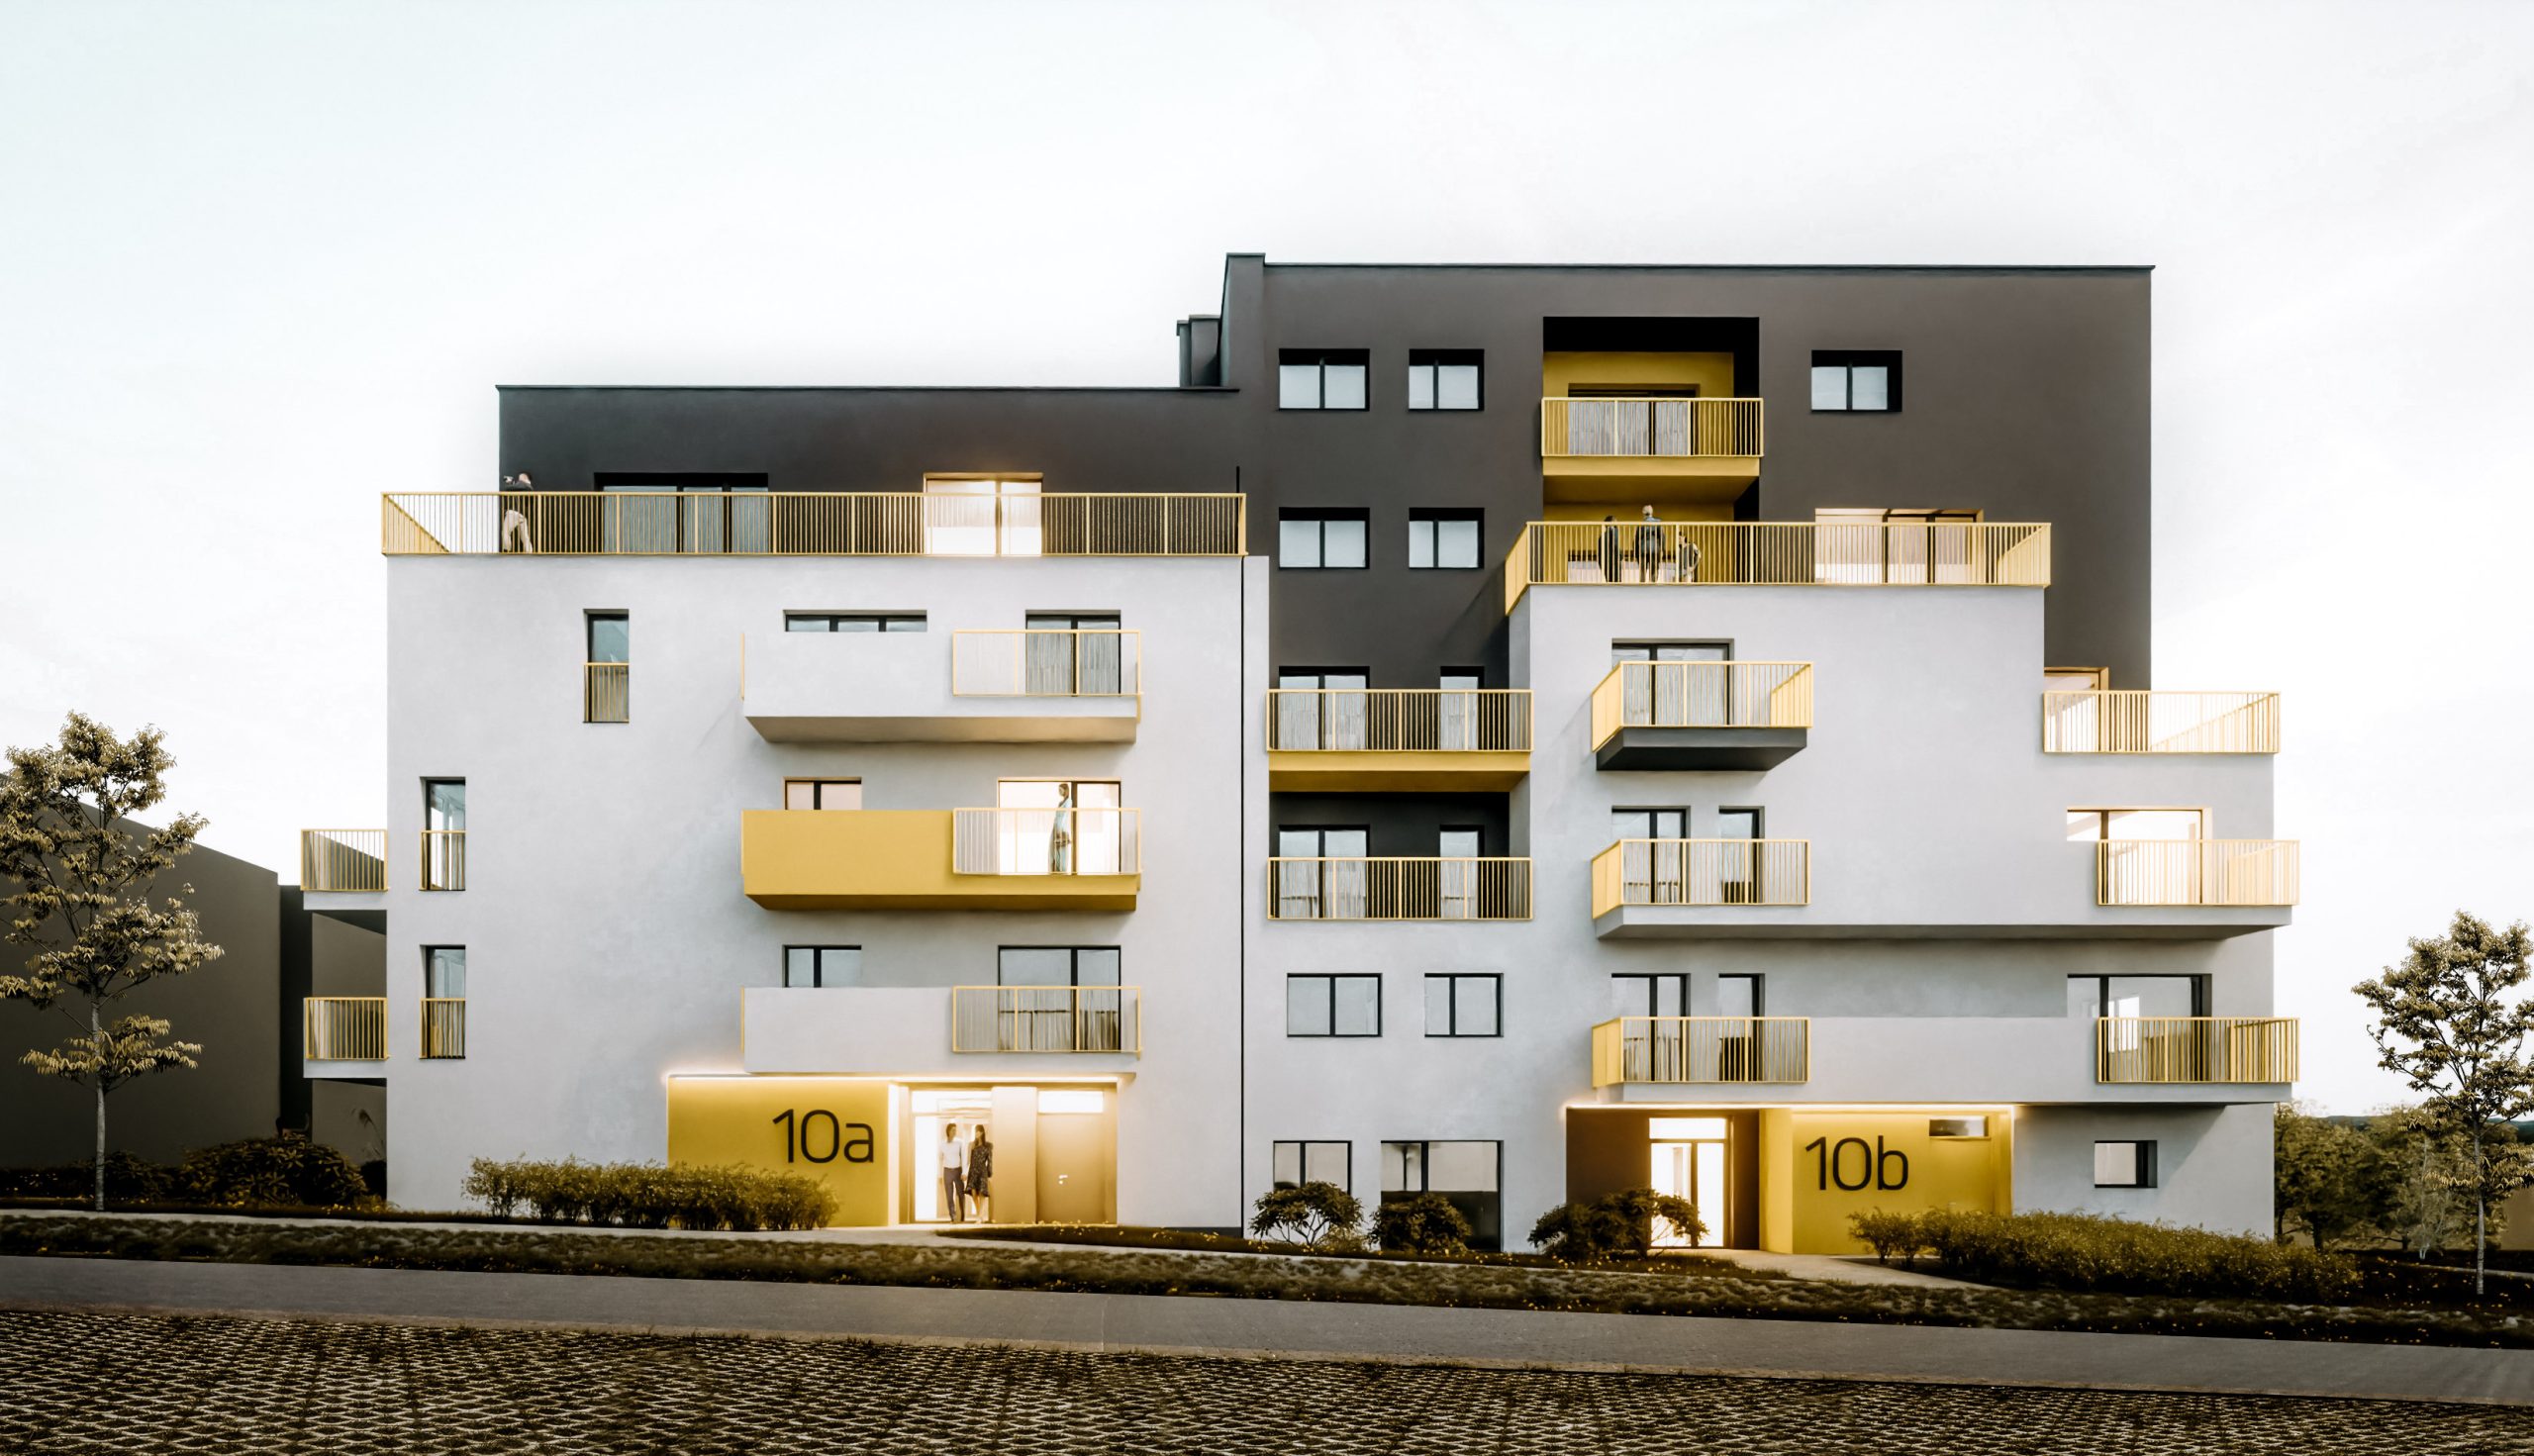 
<p>Budynek mieszkalny wielorodzinny z żółtymi balustradami zawierający 40 mieszkań o zróżnicowanej powierzchni</p>
